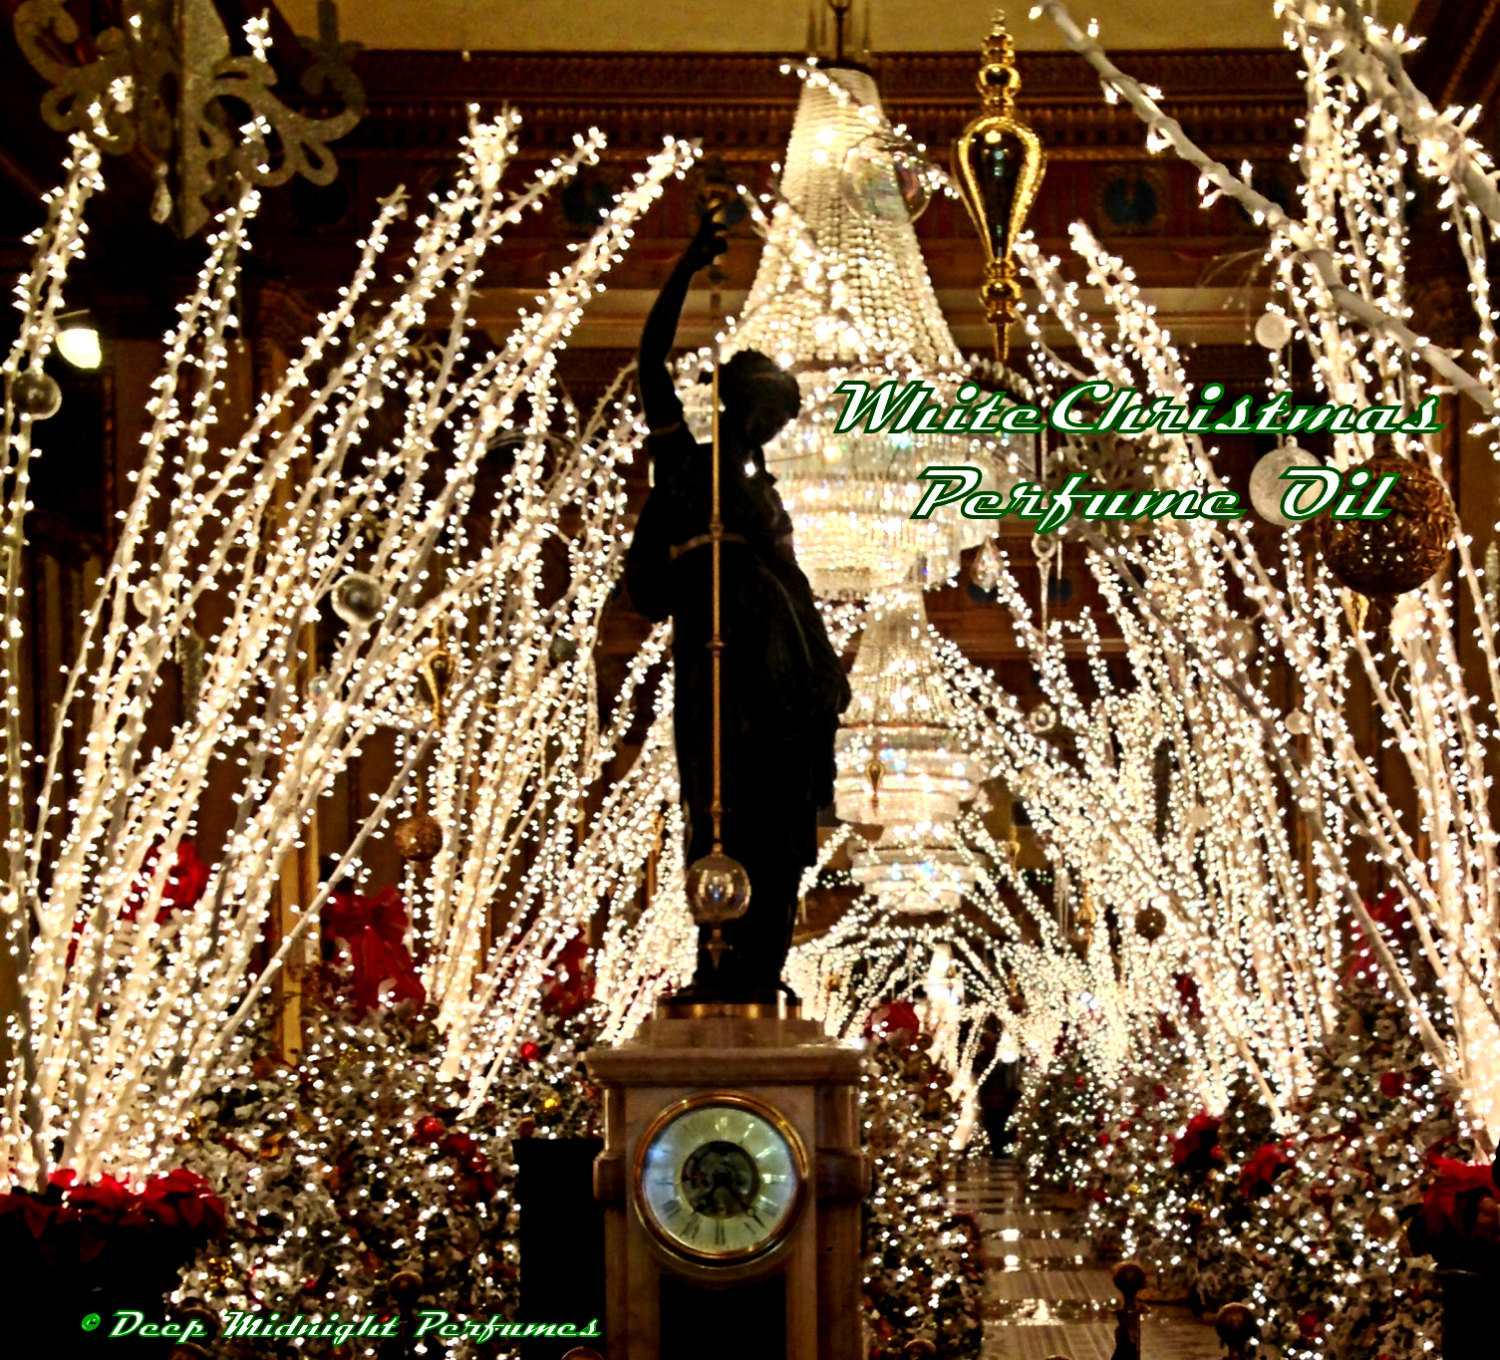 WHITE CHRISTMAS Perfume Oil - Fir, Balsam, Cedar, Orange Peel, Clove, Currants, Sugar Crystals, Snow - Chrismas Perfume - Holiday Fragrance